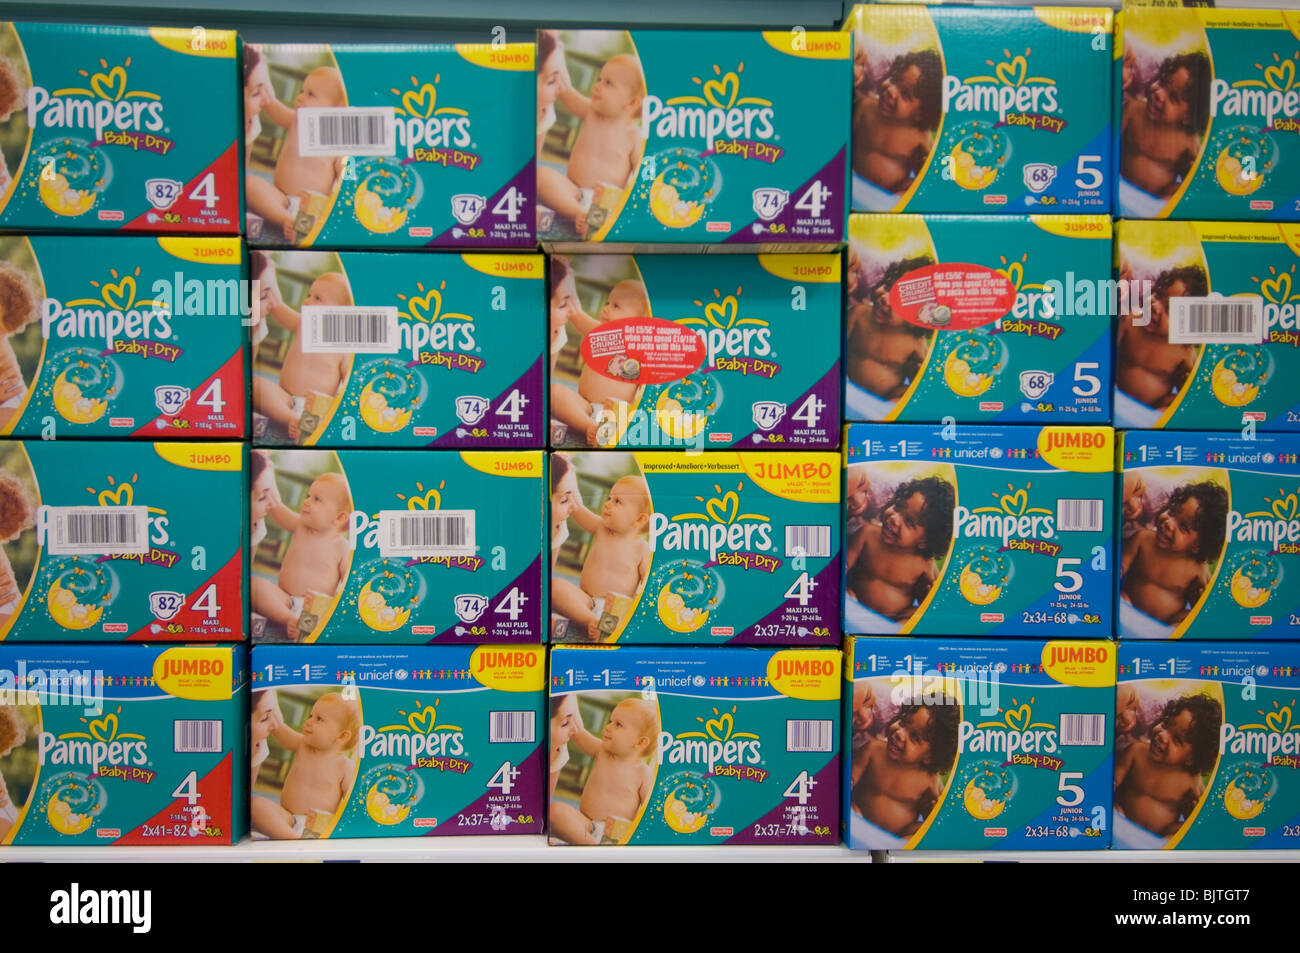 Cajas de Pampers pañales apilados en una tienda Fotografía de stock - Alamy